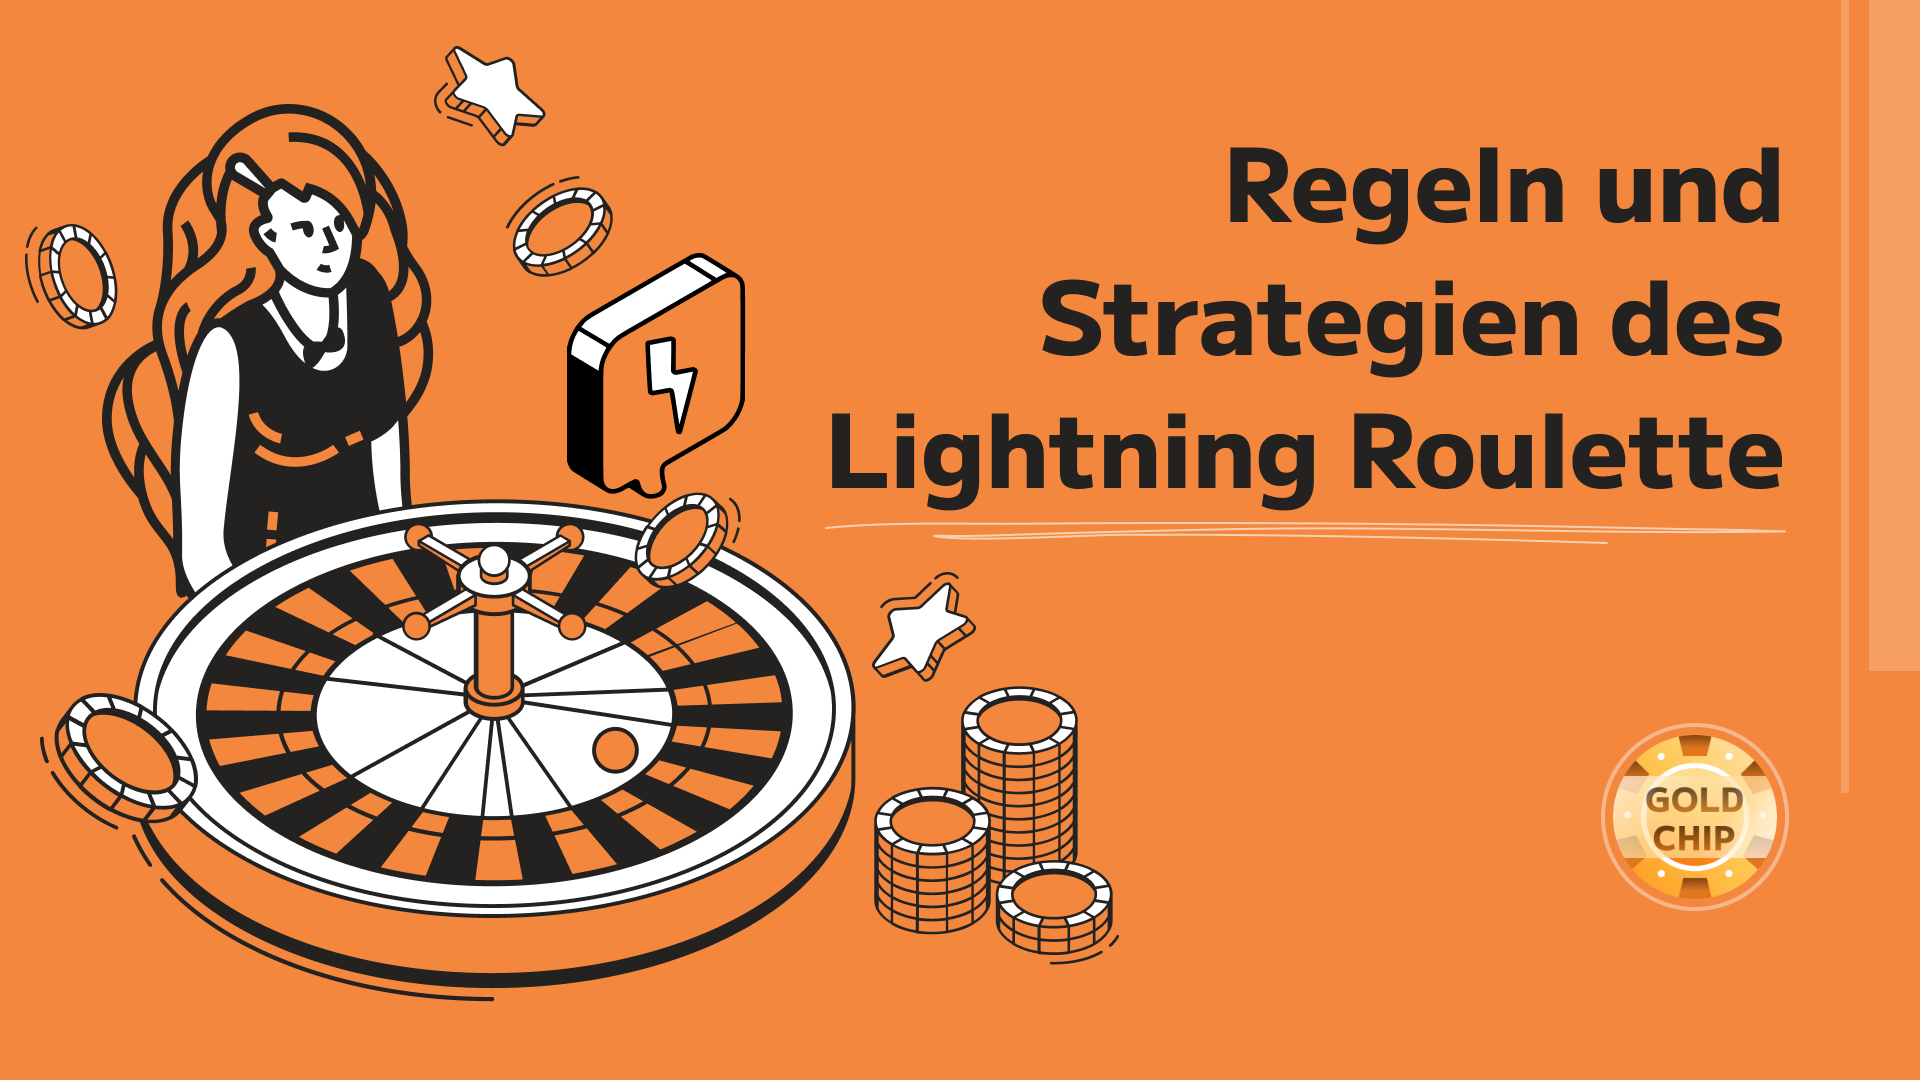 Regeln und Strategien des Lightning Roulette